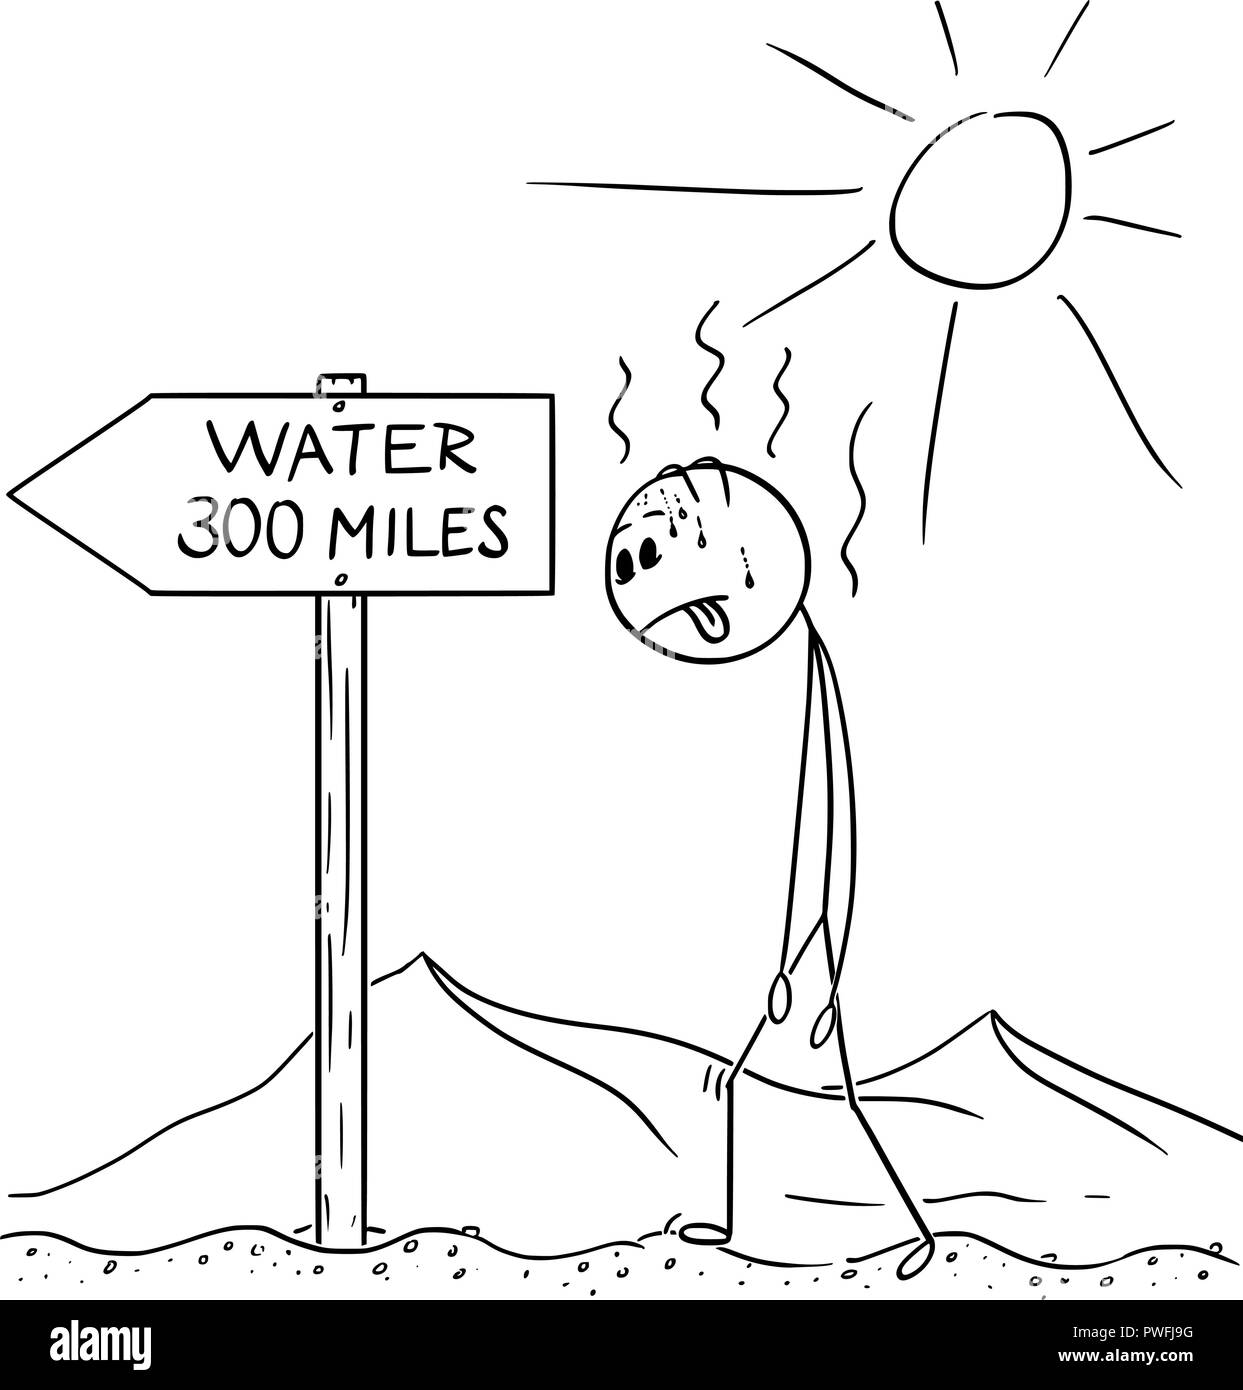 Caricature de l'homme assoiffé de marche à travers le désert et trouvé de l'eau signe 300 milles Illustration de Vecteur